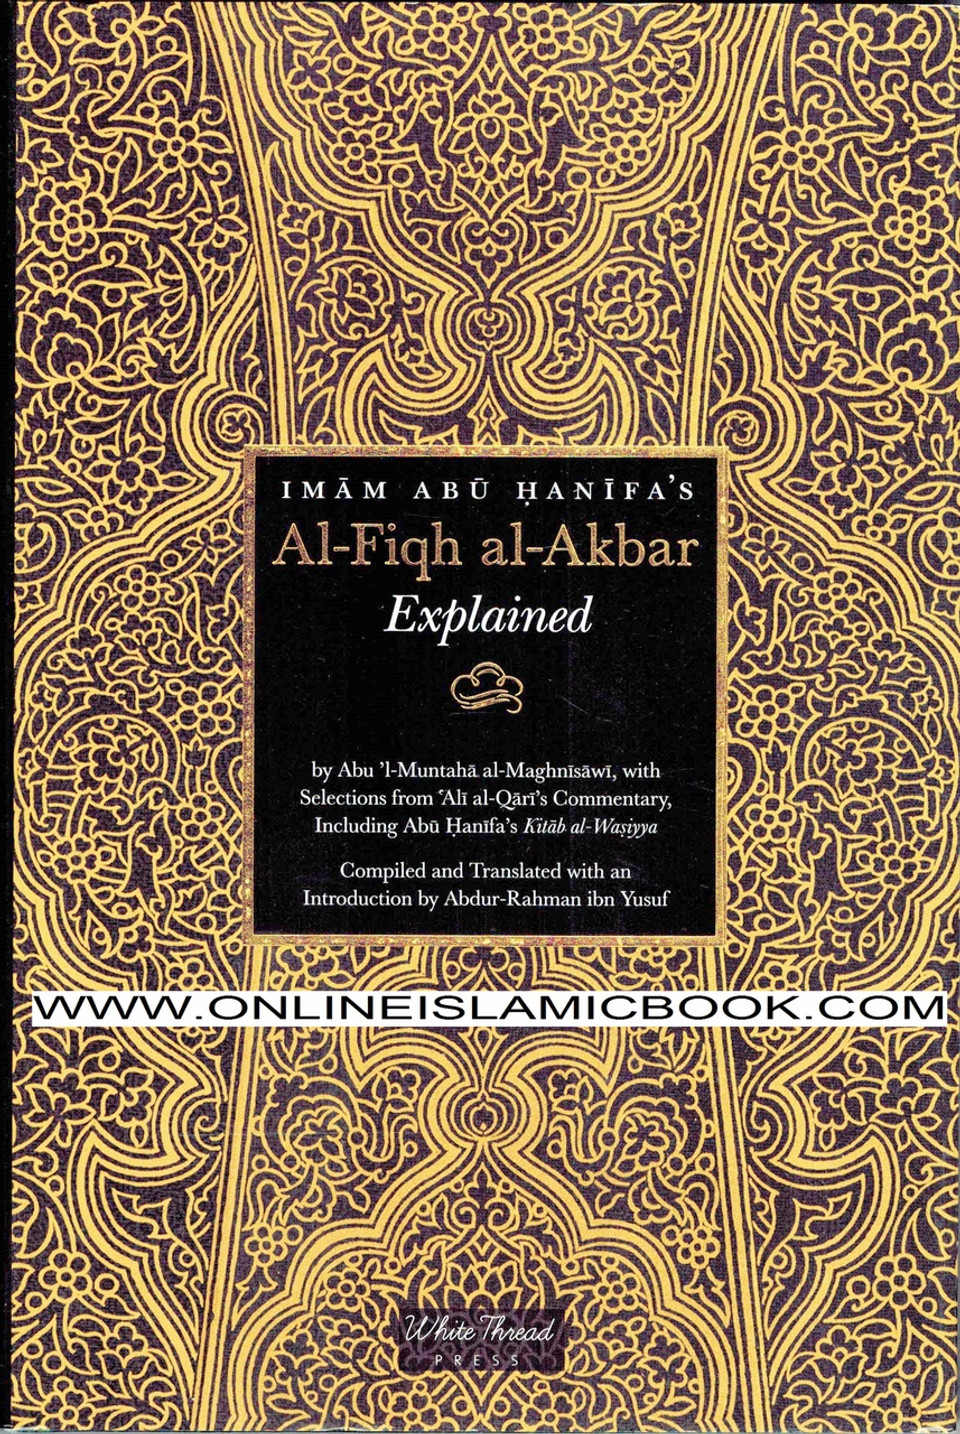 Al-Fiqh al-Akbar